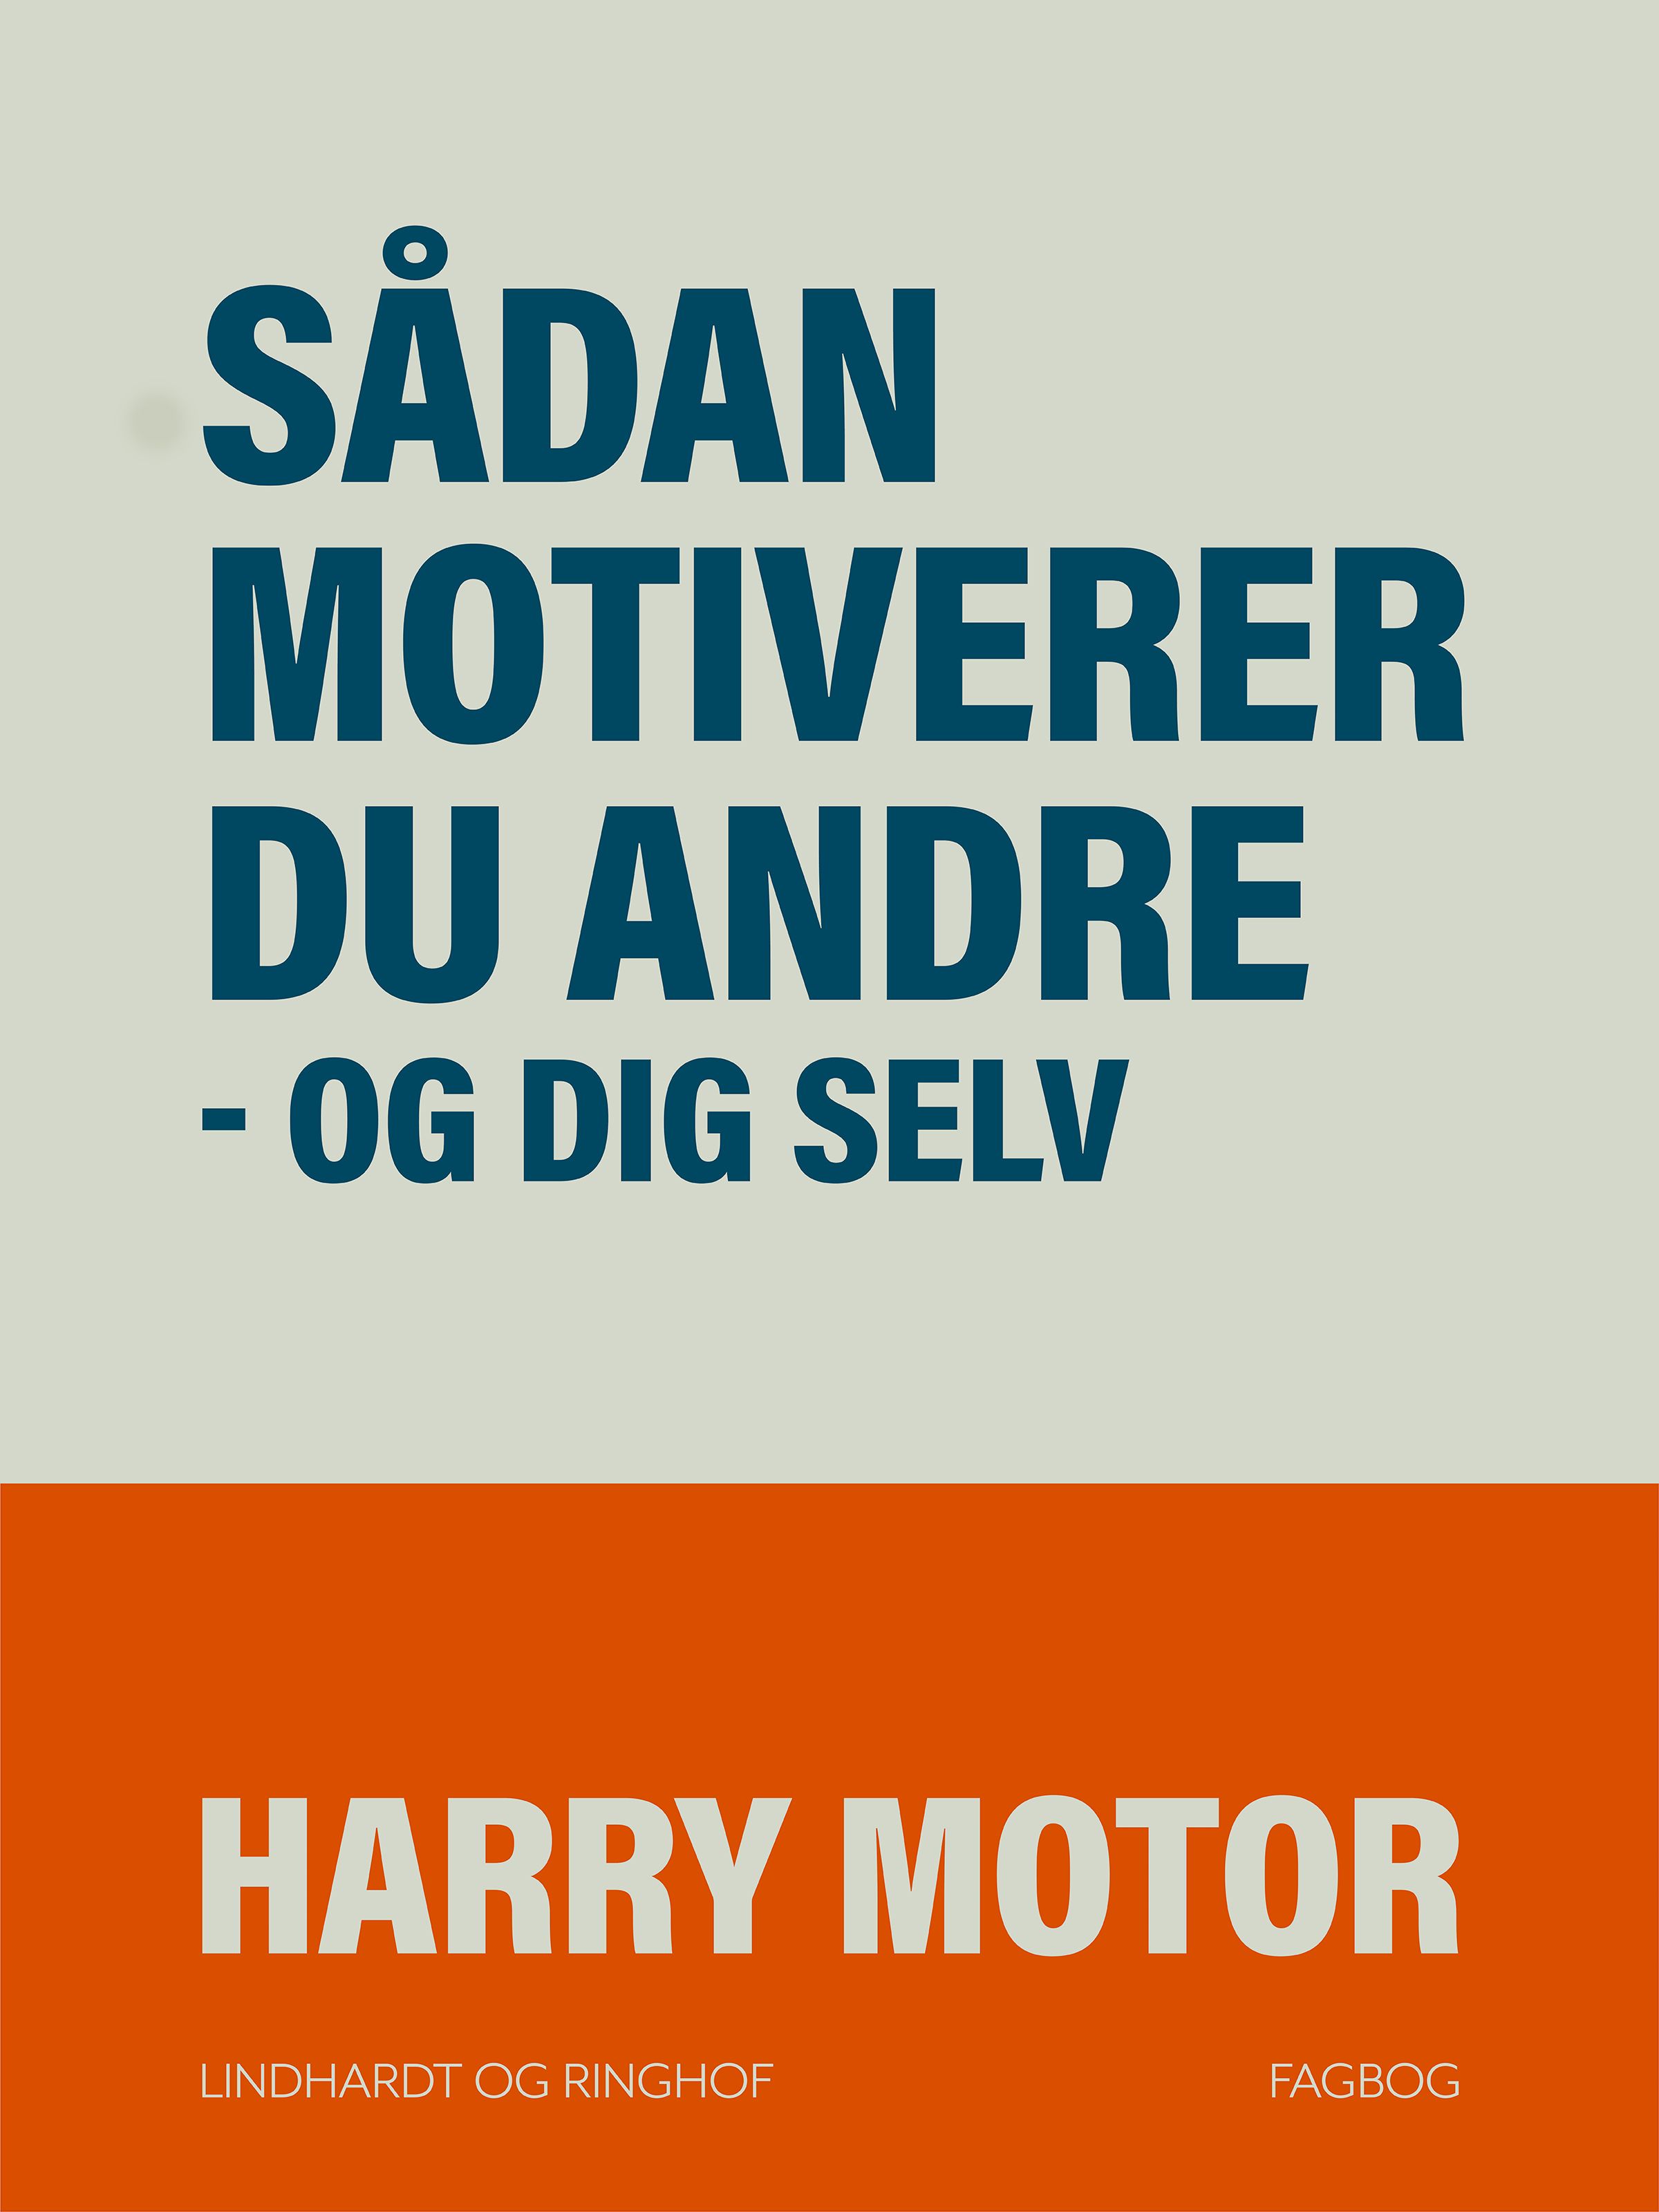 Sådan motiverer du andre - og dig selv, eBook by Harry Motor